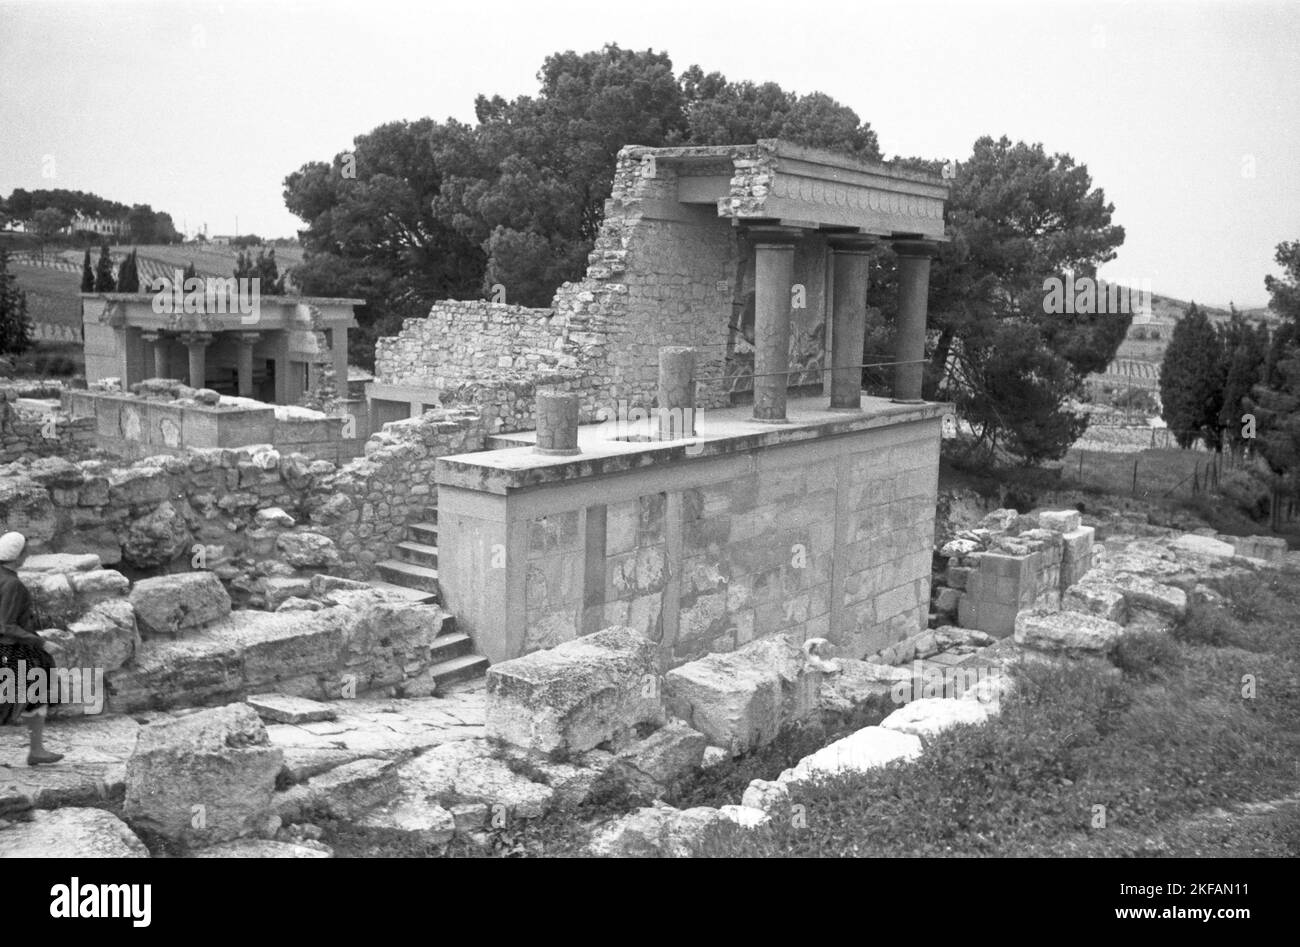 Die Palastanlage von Knossos auf der Insel Kreta, Griechenland, 1950er Jahre. Palais de Knossos sur l'île de Crète, Grèce, 1950s. Banque D'Images